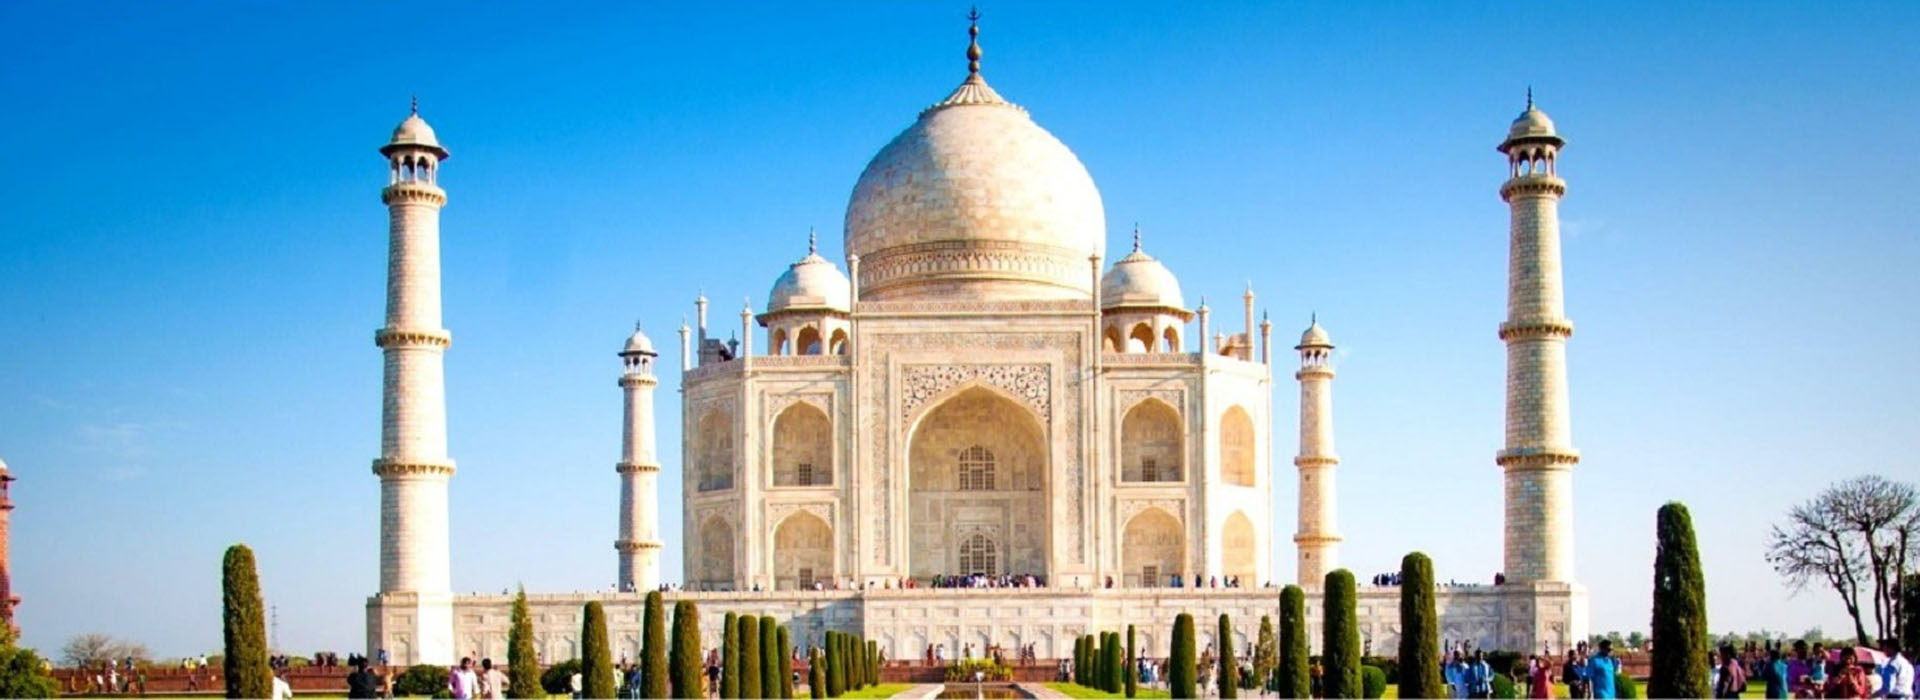 Taj Mahal Tour From Jaipur